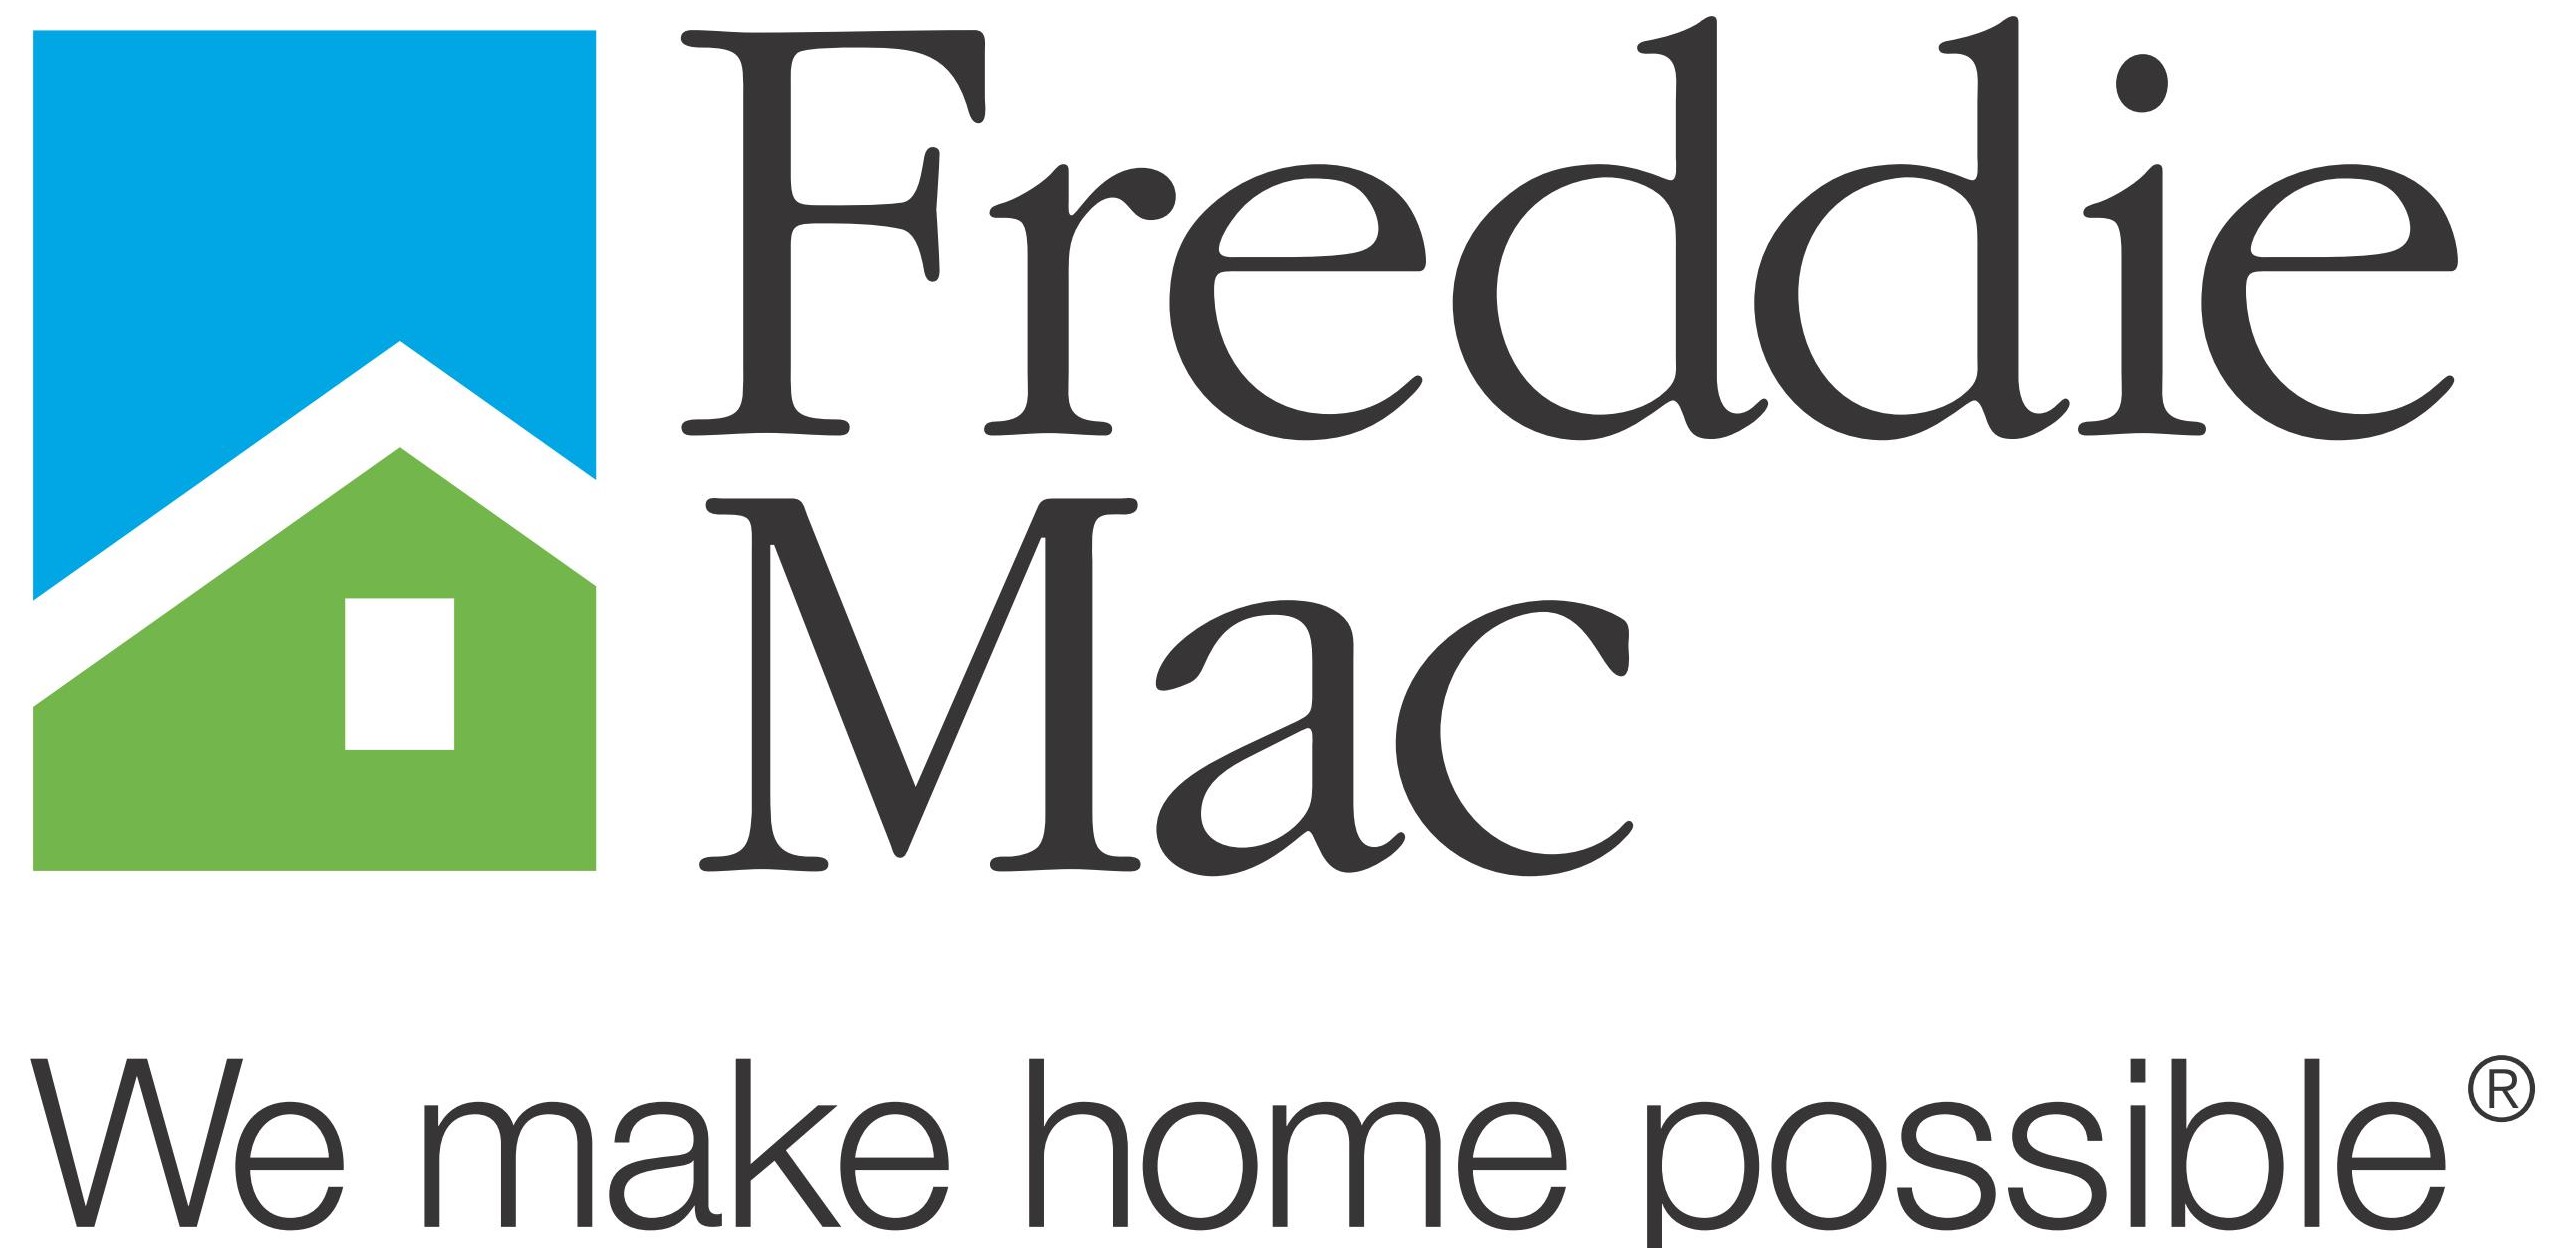 fannie-mae-freddie-mac-logo